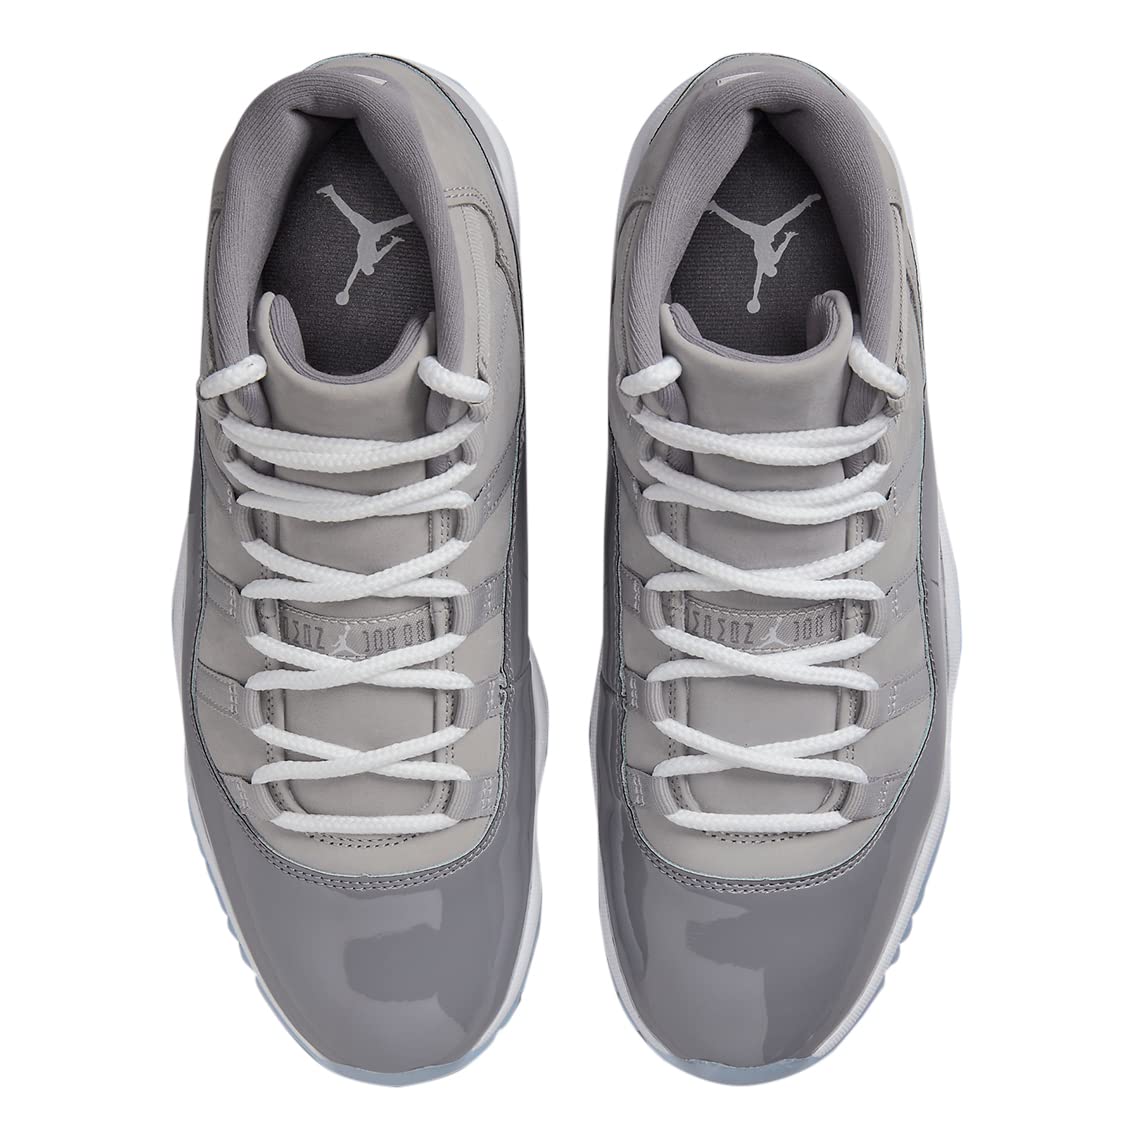 Jordan Mens Air Jordan 11 Retro CT8012 005 Cool Grey 2021 - Size 7.5